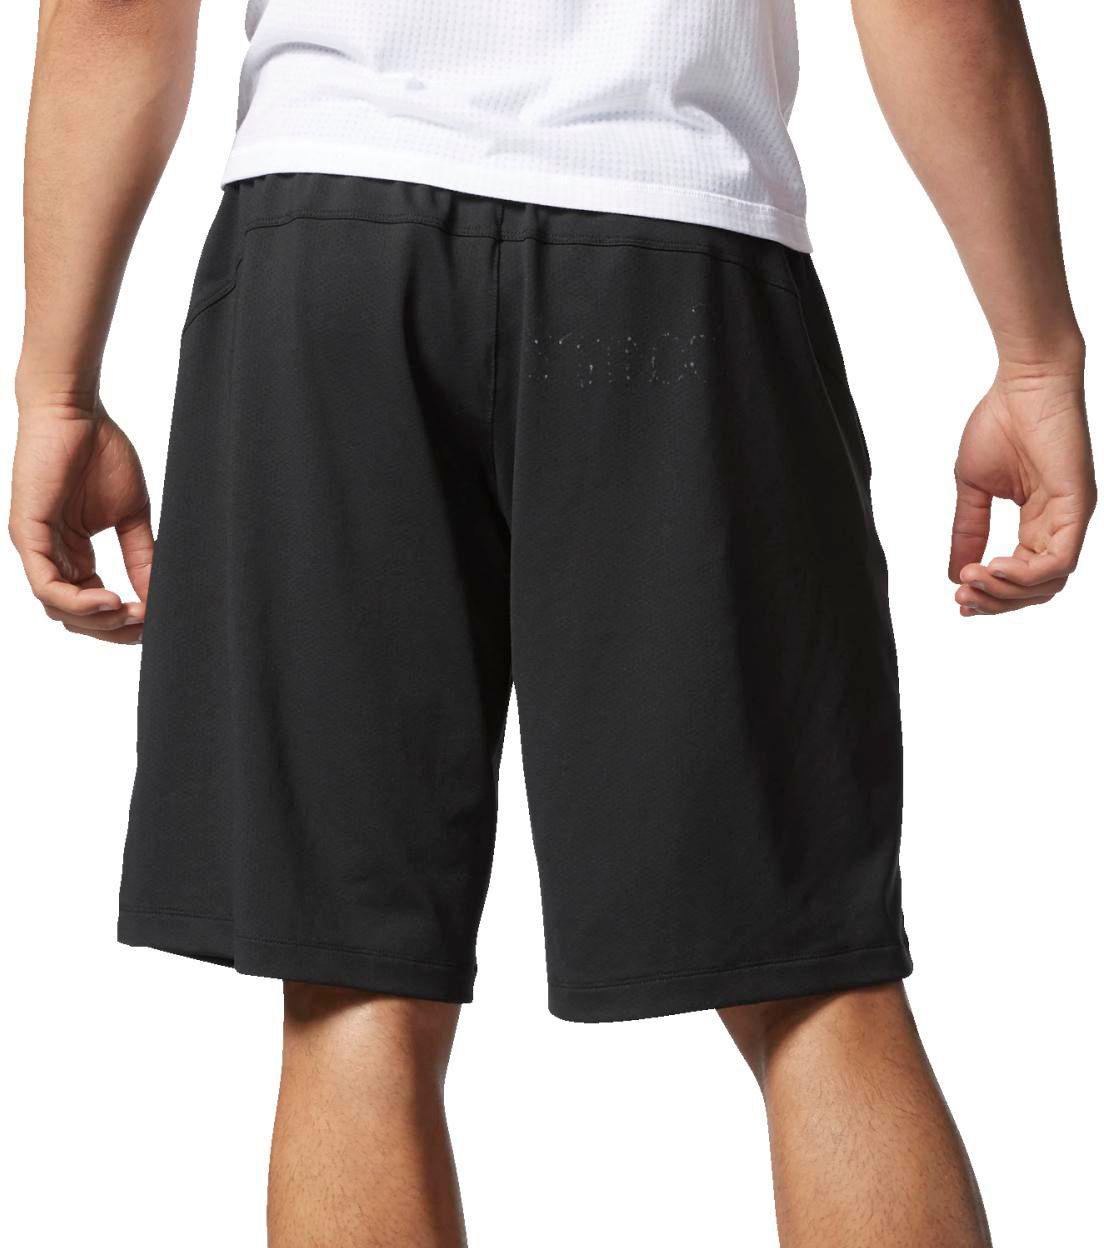 adidas franchise shorts